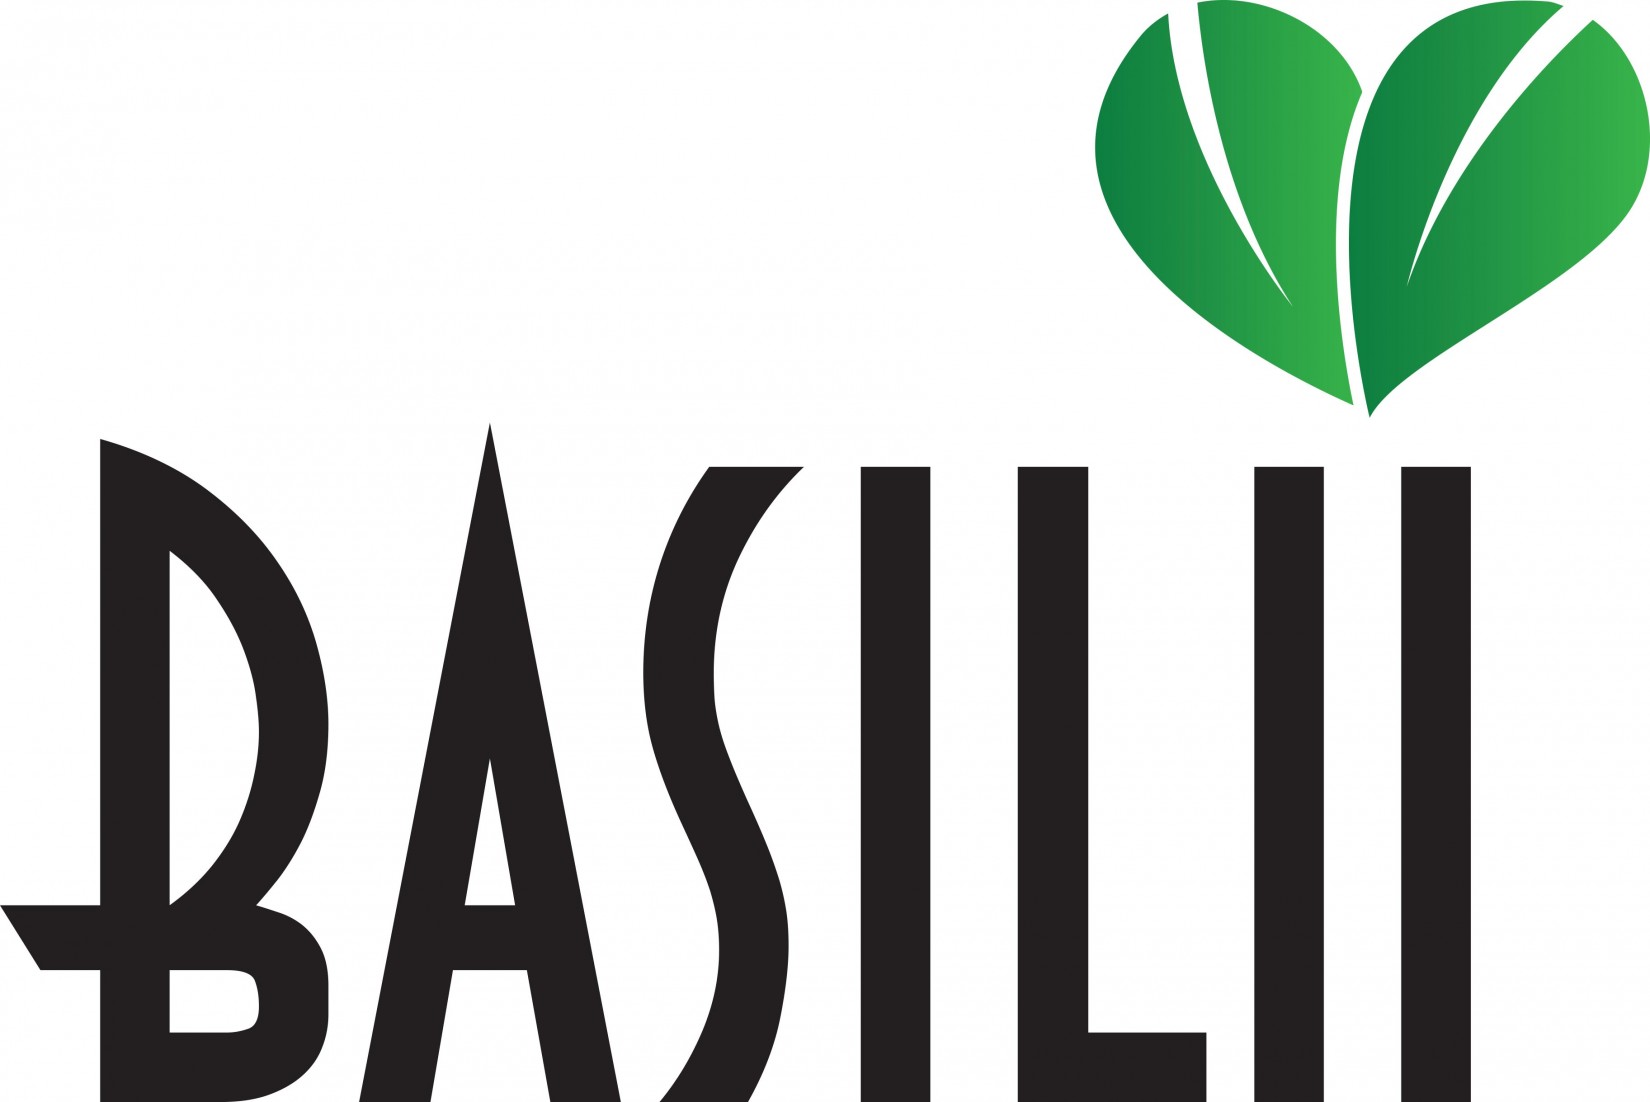 Basilii LLC.